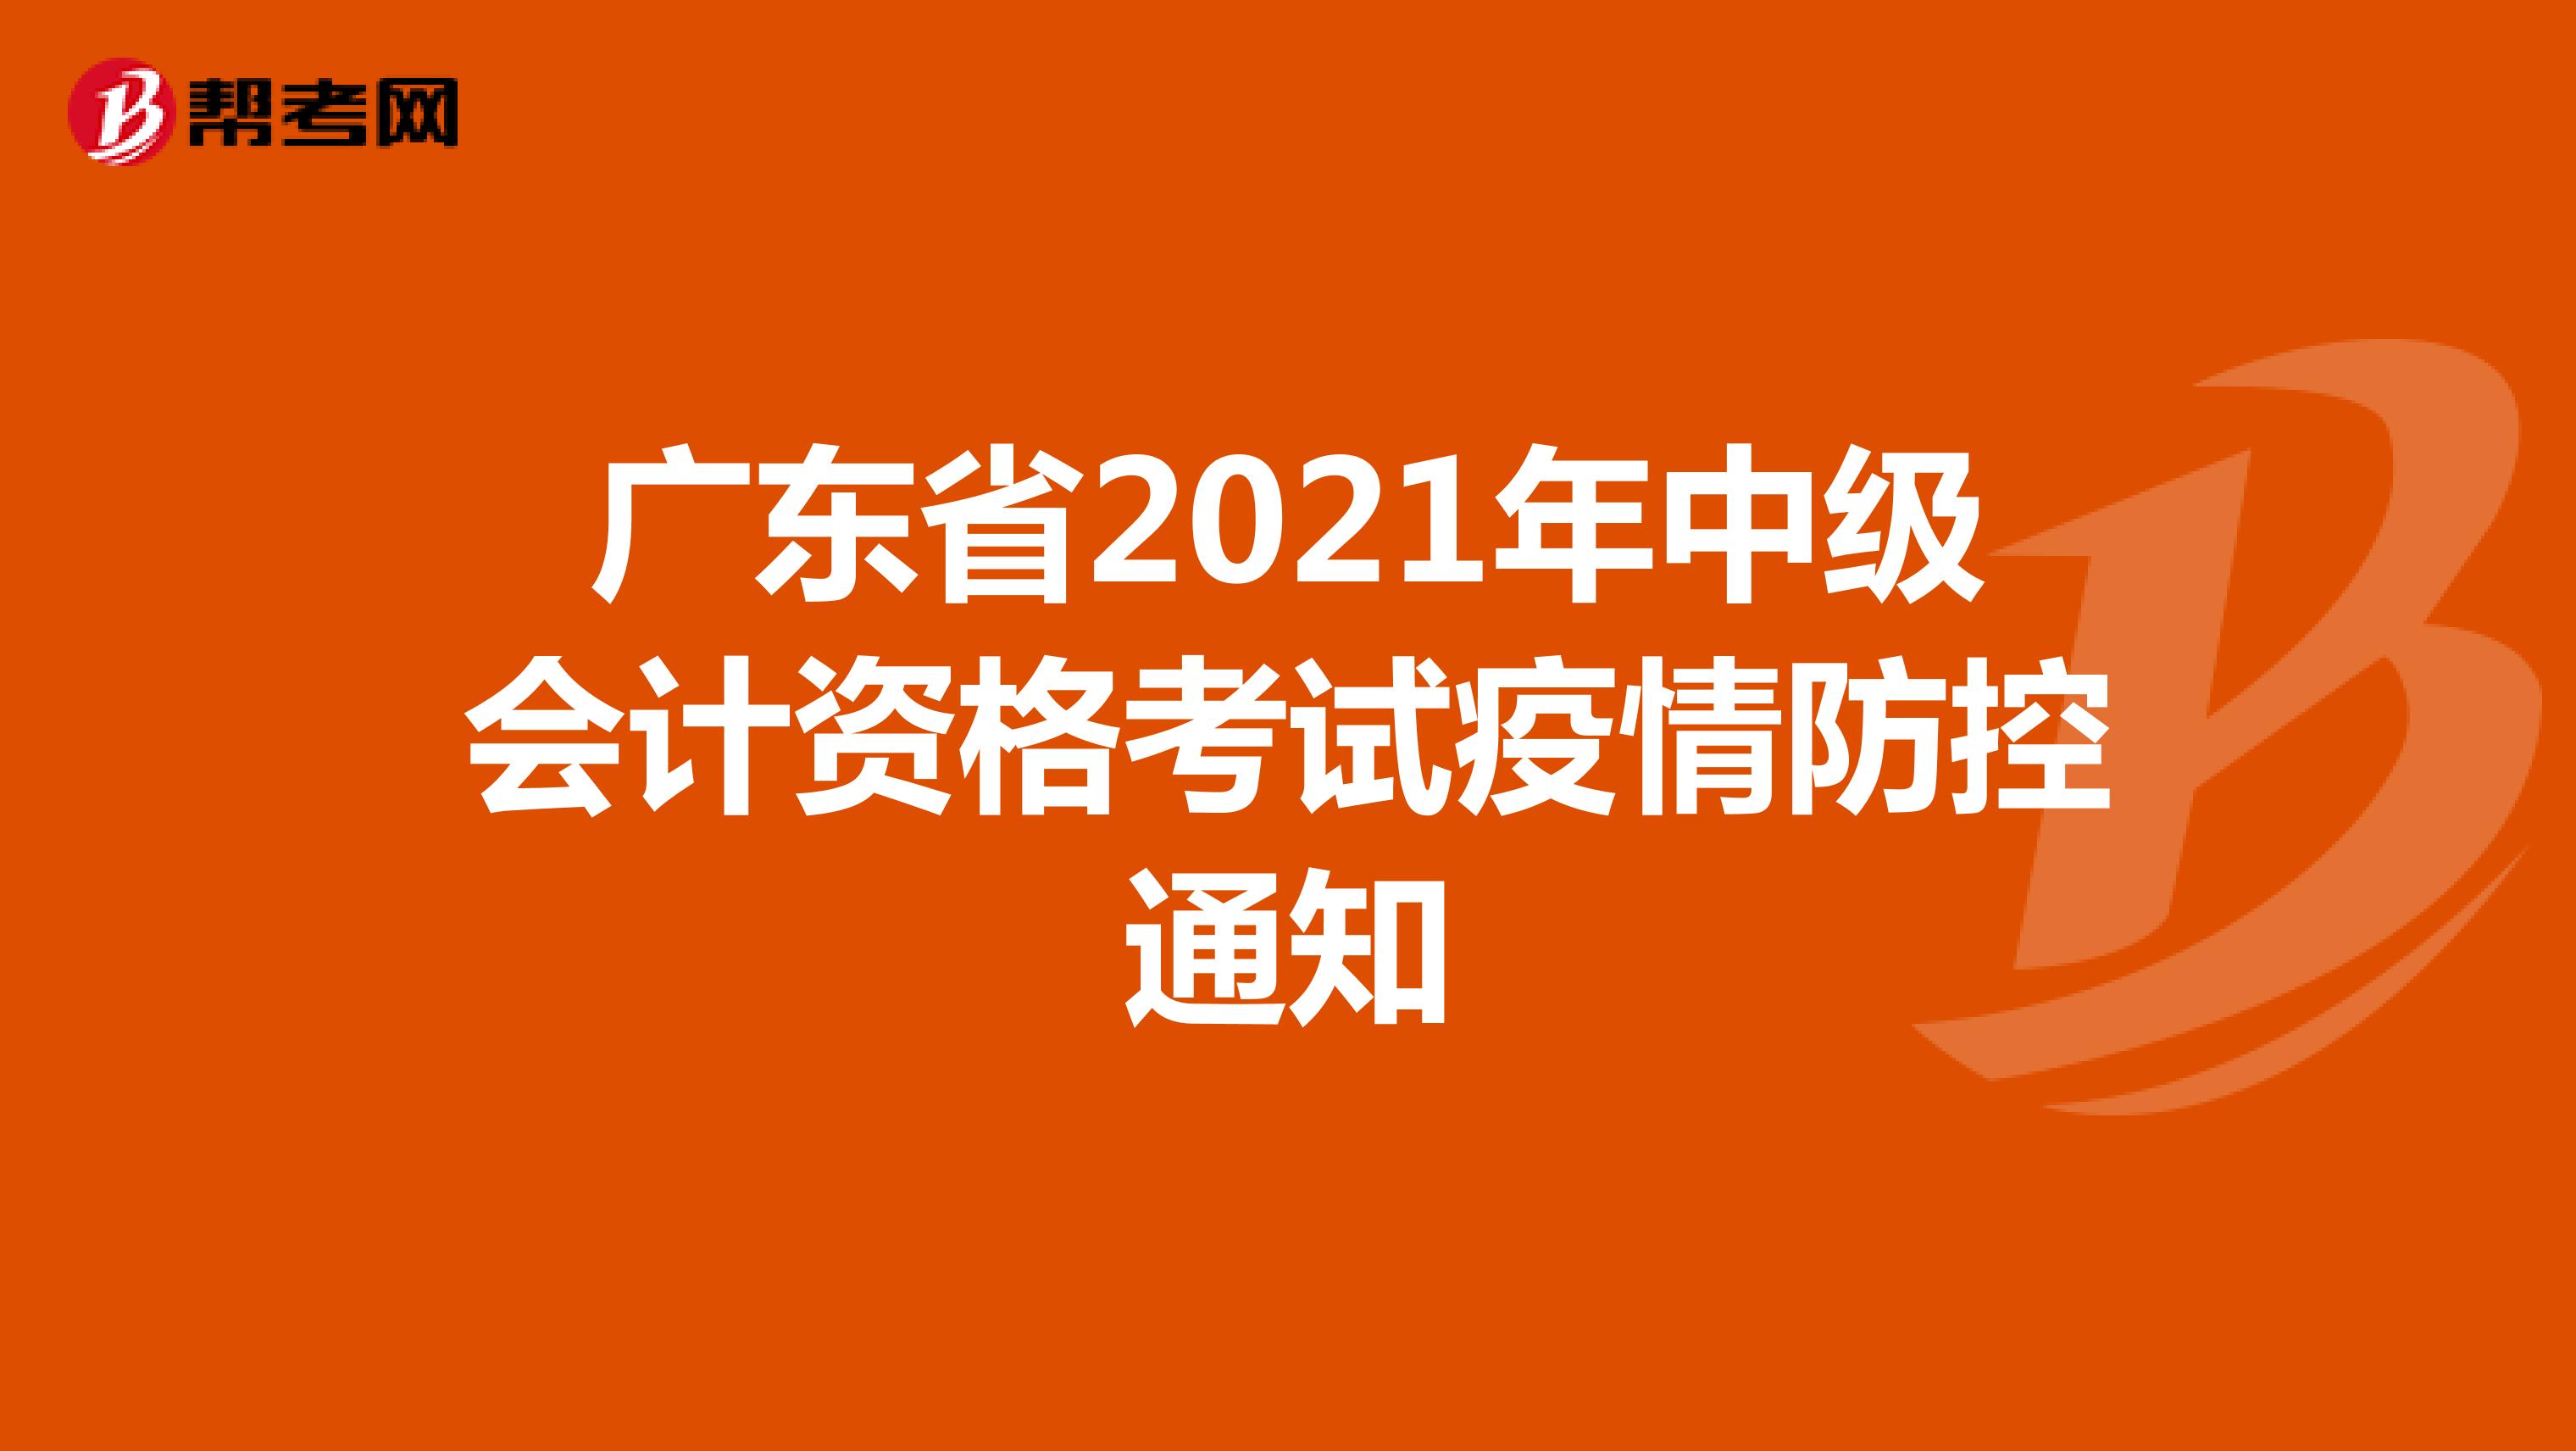 广东省2021年中级会计资格考试疫情防控通知